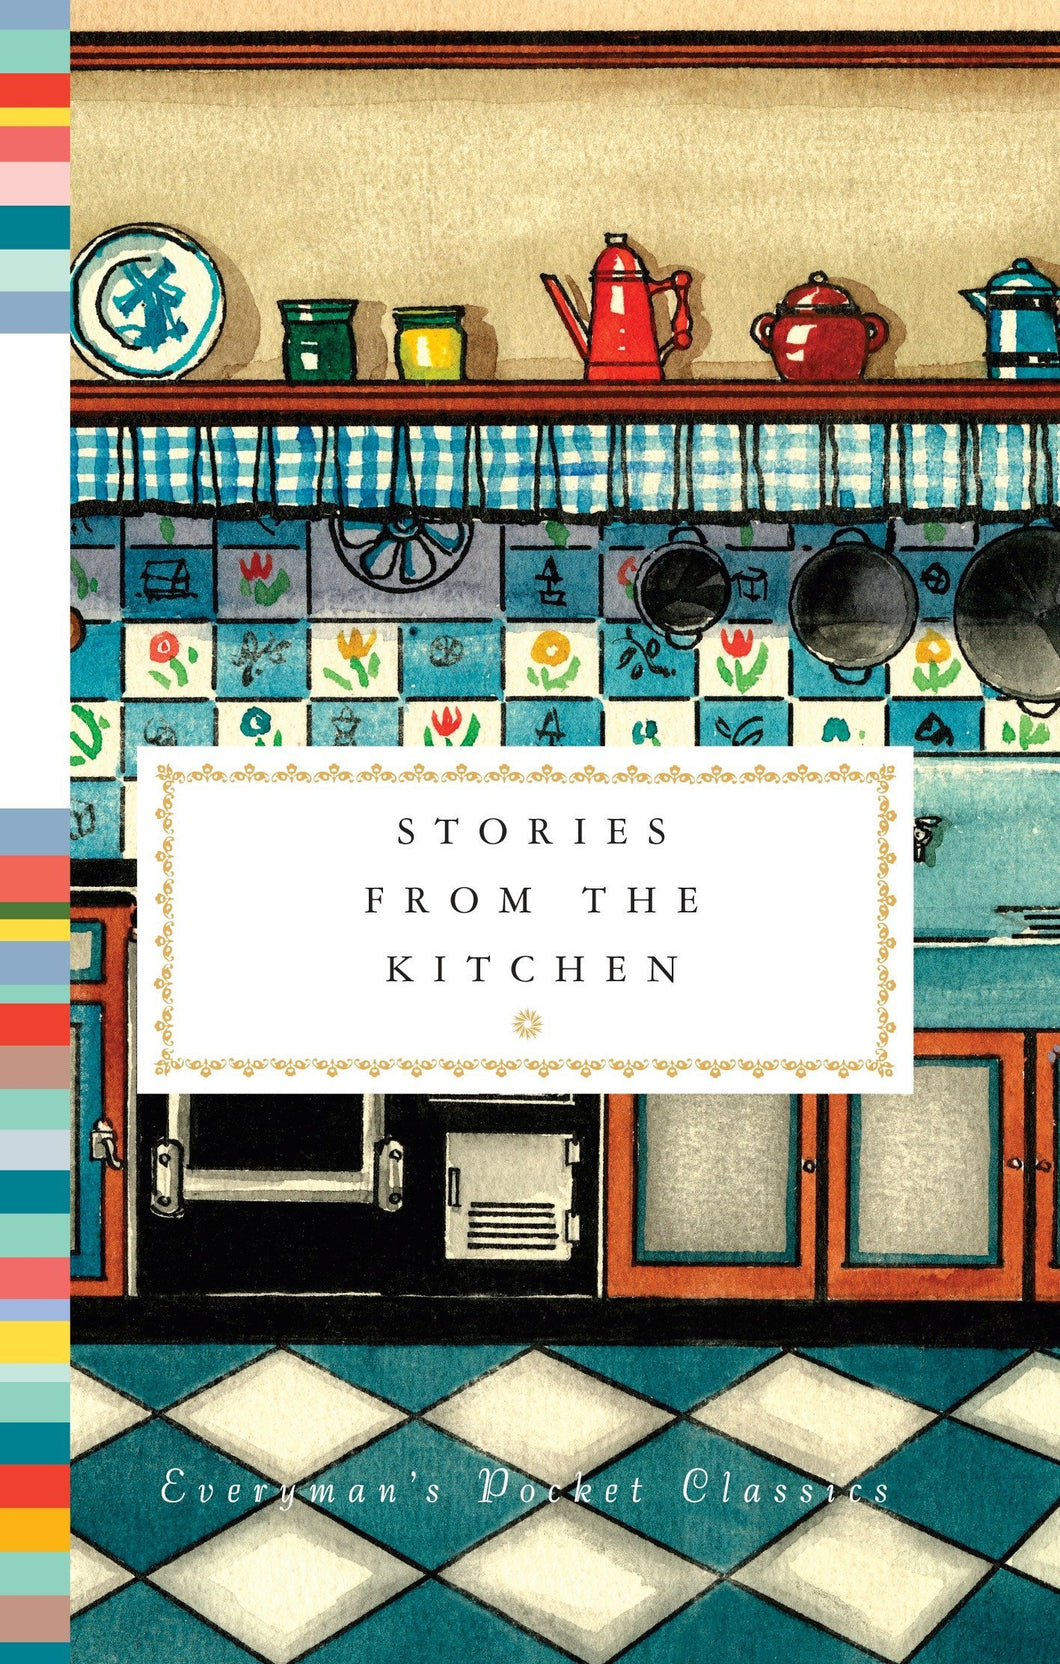 Stories from the Kitchen ร้านหนังสือและสิ่งของ เป็นร้านหนังสือภาษาอังกฤษหายาก และร้านกาแฟ หรือ บุ๊คคาเฟ่ ตั้งอยู่สุขุมวิท กรุงเทพ